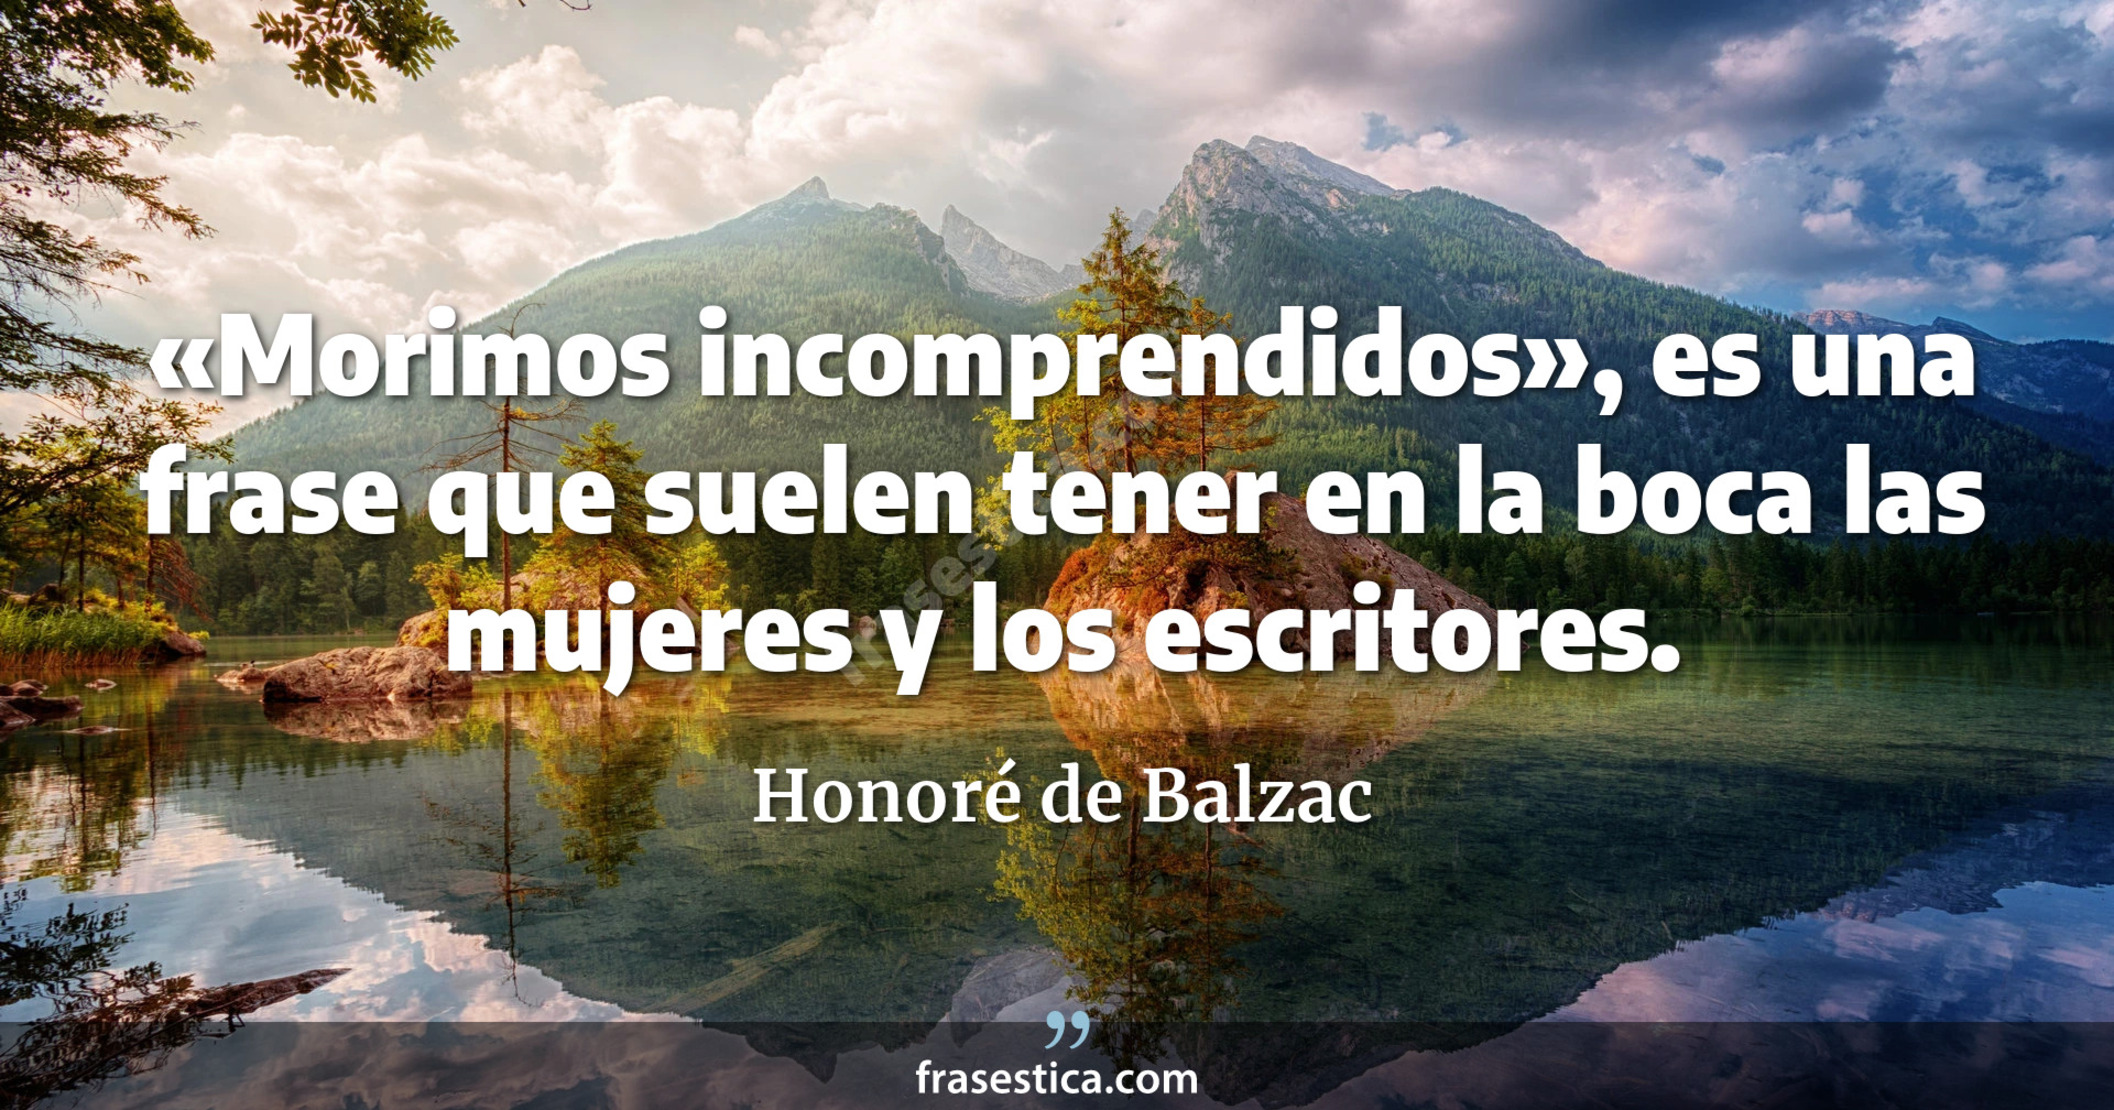 «Morimos incomprendidos», es una frase que suelen tener en la boca las mujeres y los escritores. - Honoré de Balzac